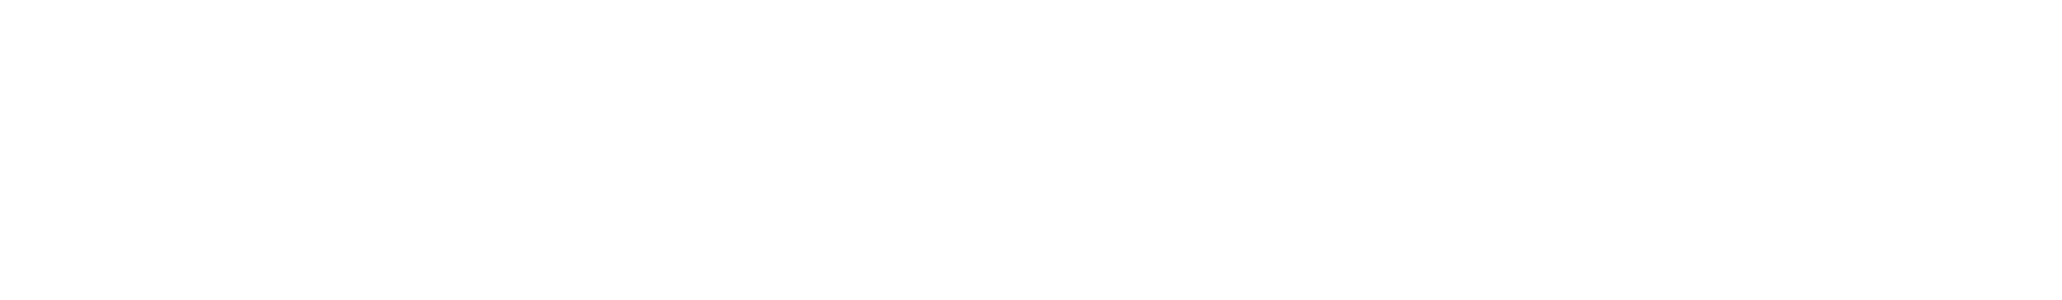 Transcend-Hospice-Header-Logo-2